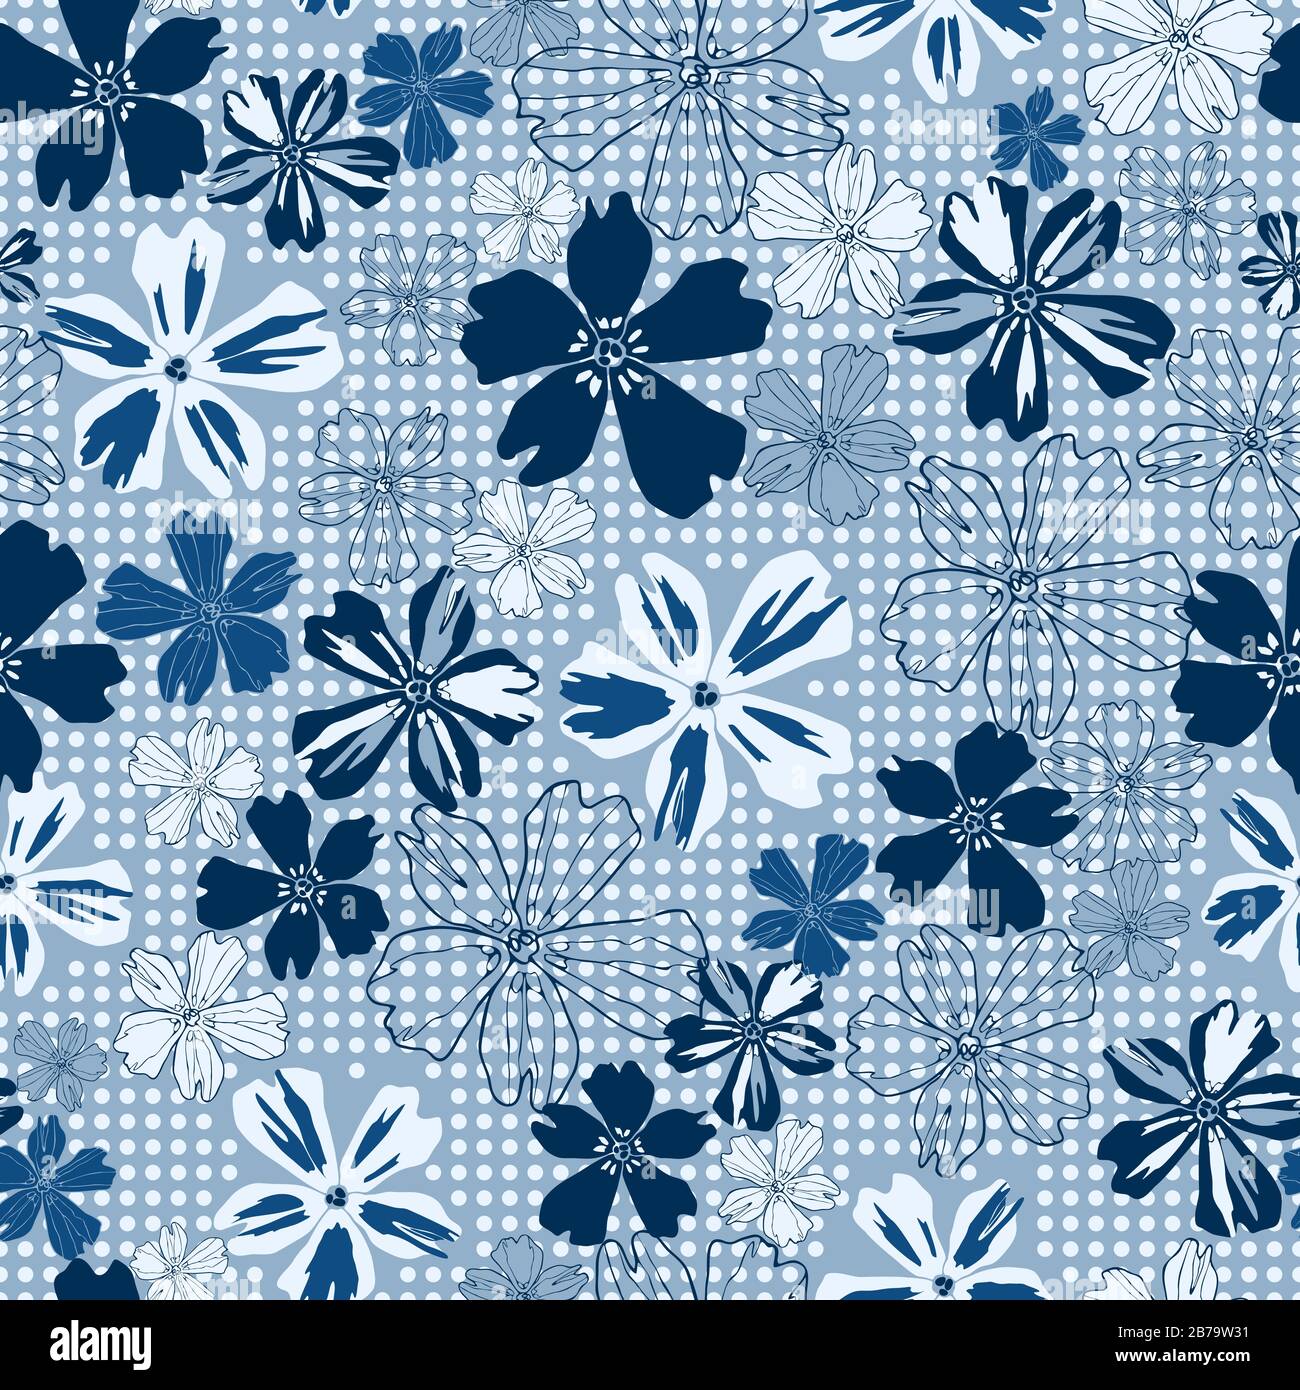 Blau getönte, monochromatische Blumen verschiedener Größen, verteilt auf einem gestrichelten Hintergrundvektor nahtlose Oberfläche, nicht-direktionales Repetiermuster. EPS. Stock Vektor